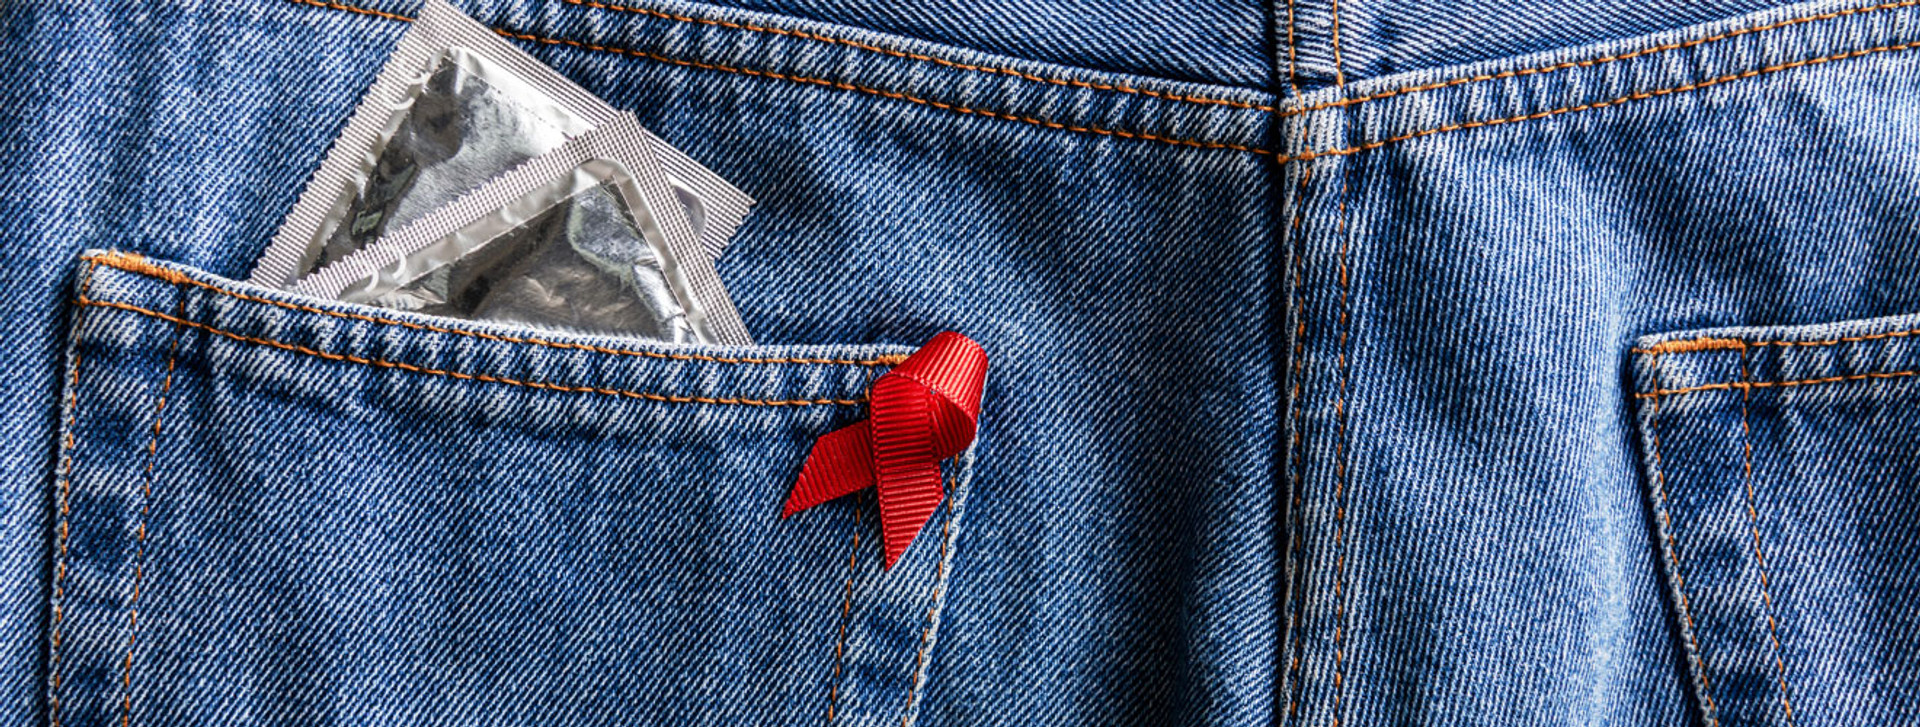 ТЕСТ: що ви знаєте про ВІЛ/СНІД, його симптоми та шляхи передачі